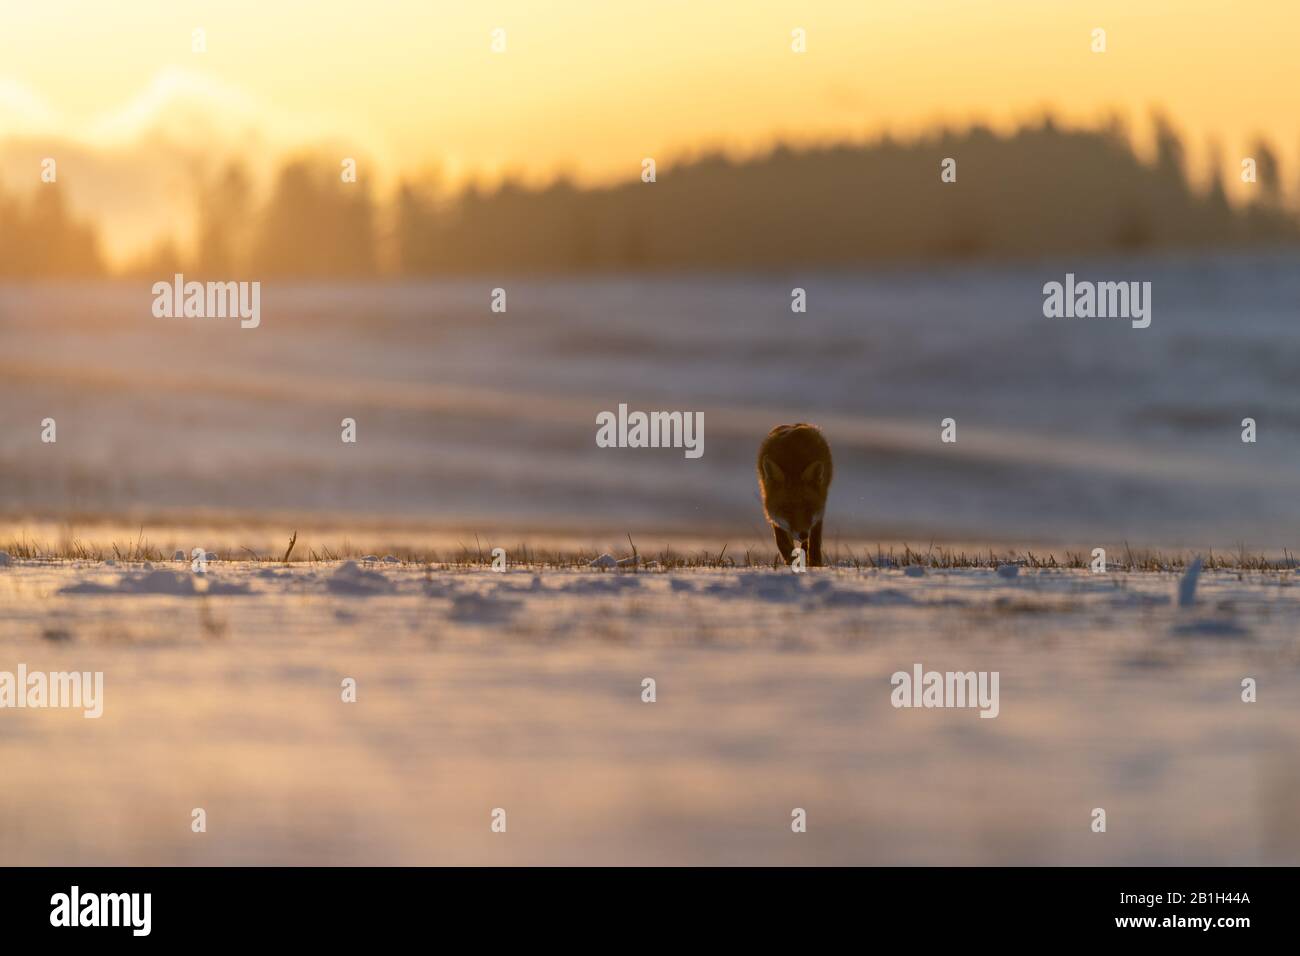 Volpe rossa (Vulpes vulpes) sul prato coperto di neve. Sullo sfondo c'è un'alba sulla foresta. Luce dorata soffusa. Foto Stock